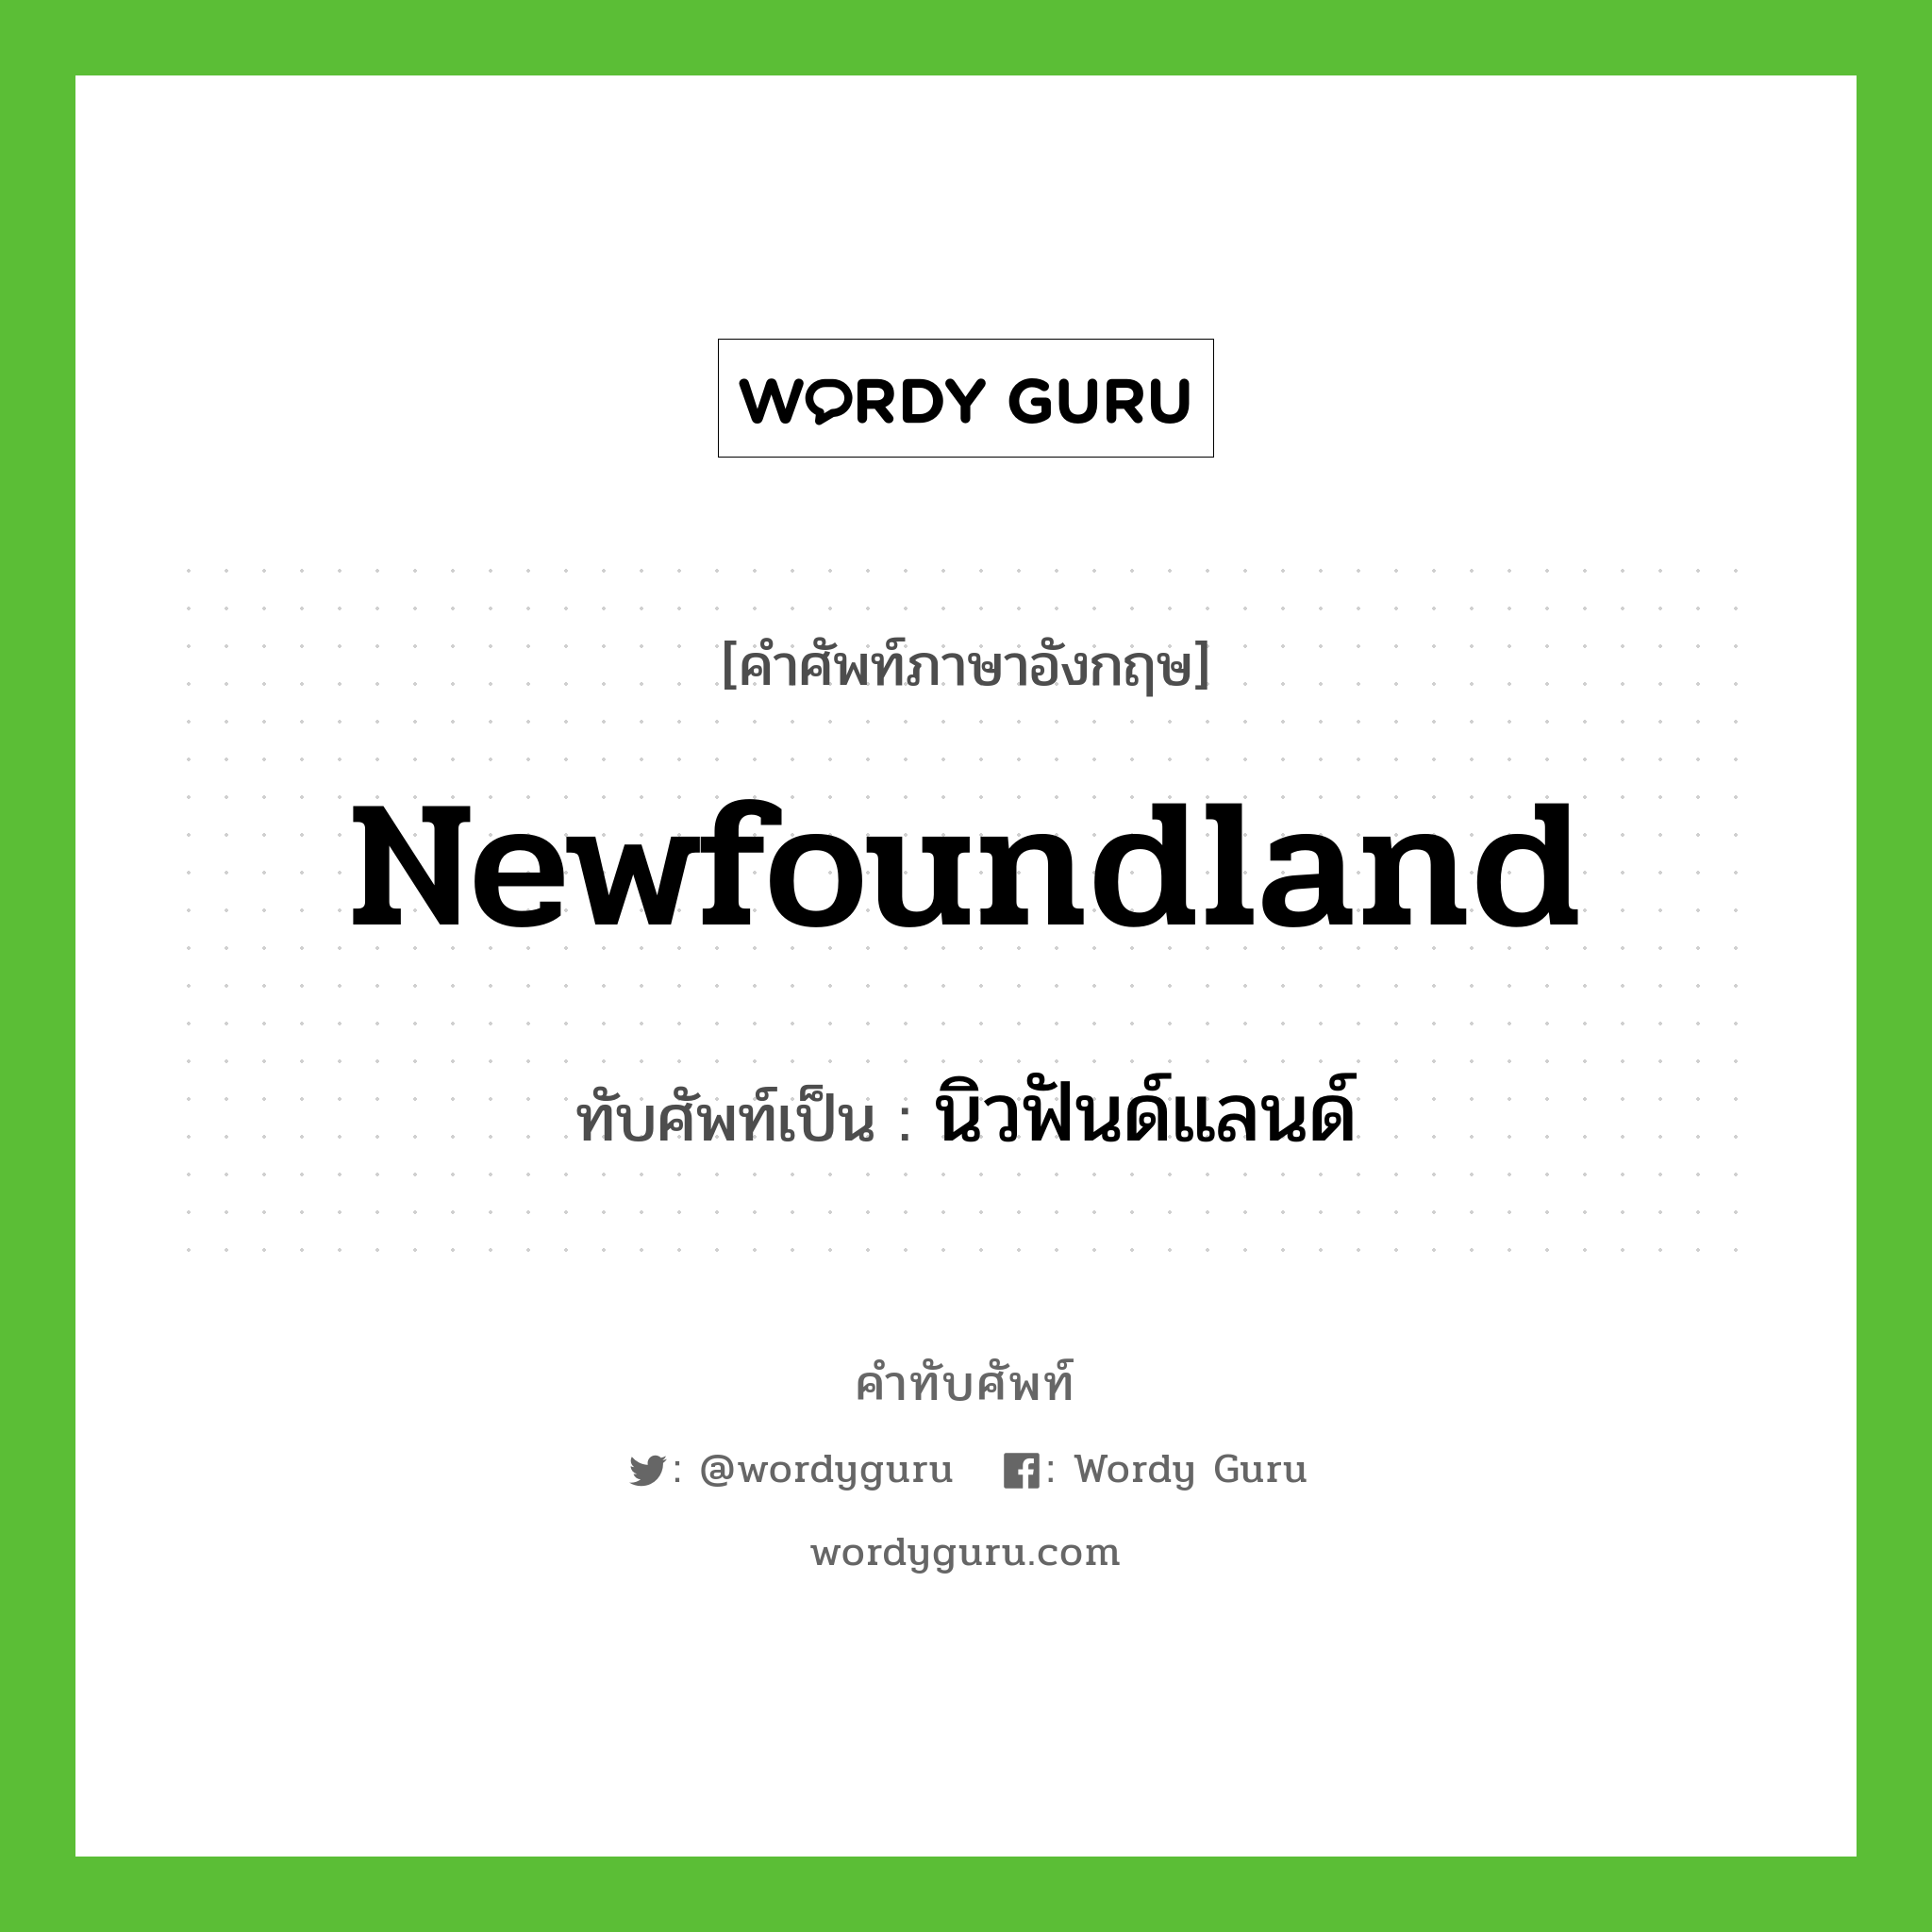 นิวฟันด์แลนด์ เขียนอย่างไร?, คำศัพท์ภาษาอังกฤษ นิวฟันด์แลนด์ ทับศัพท์เป็น Newfoundland